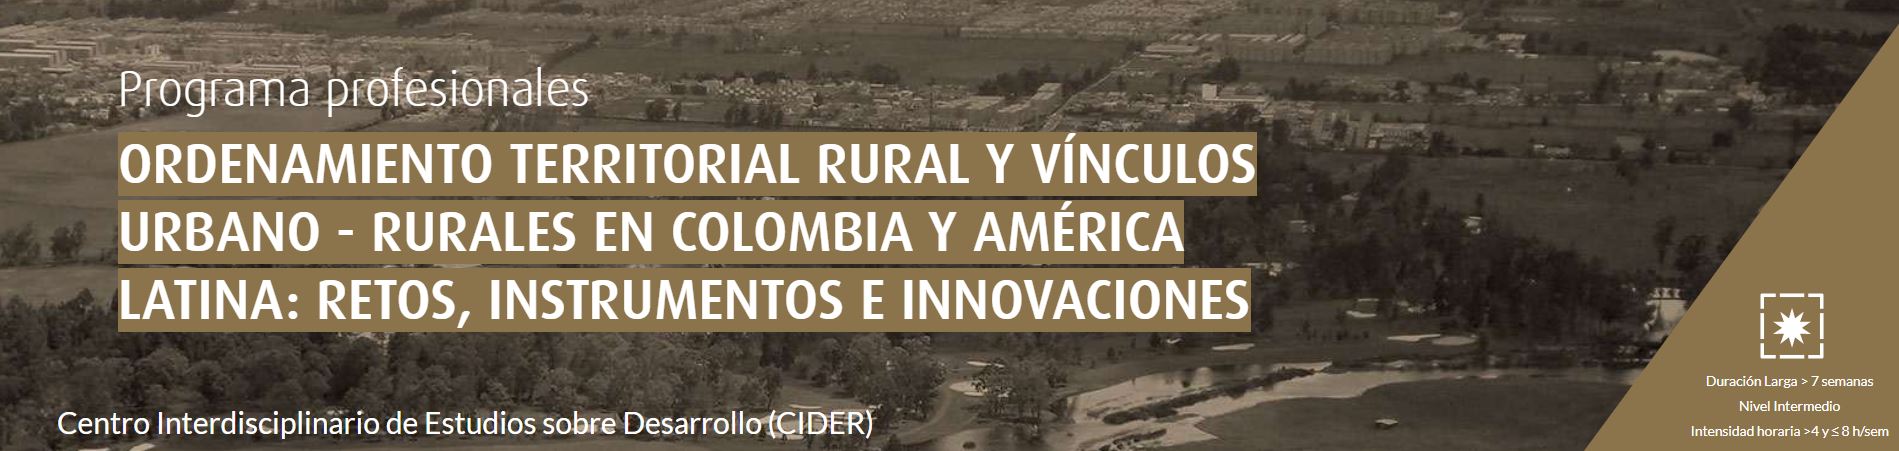 Ordenamiento territorial rural y vínculos urbano-rurales en Colombia y Centro América: retos, instrumentos e innovaciones Cider | Uniandes